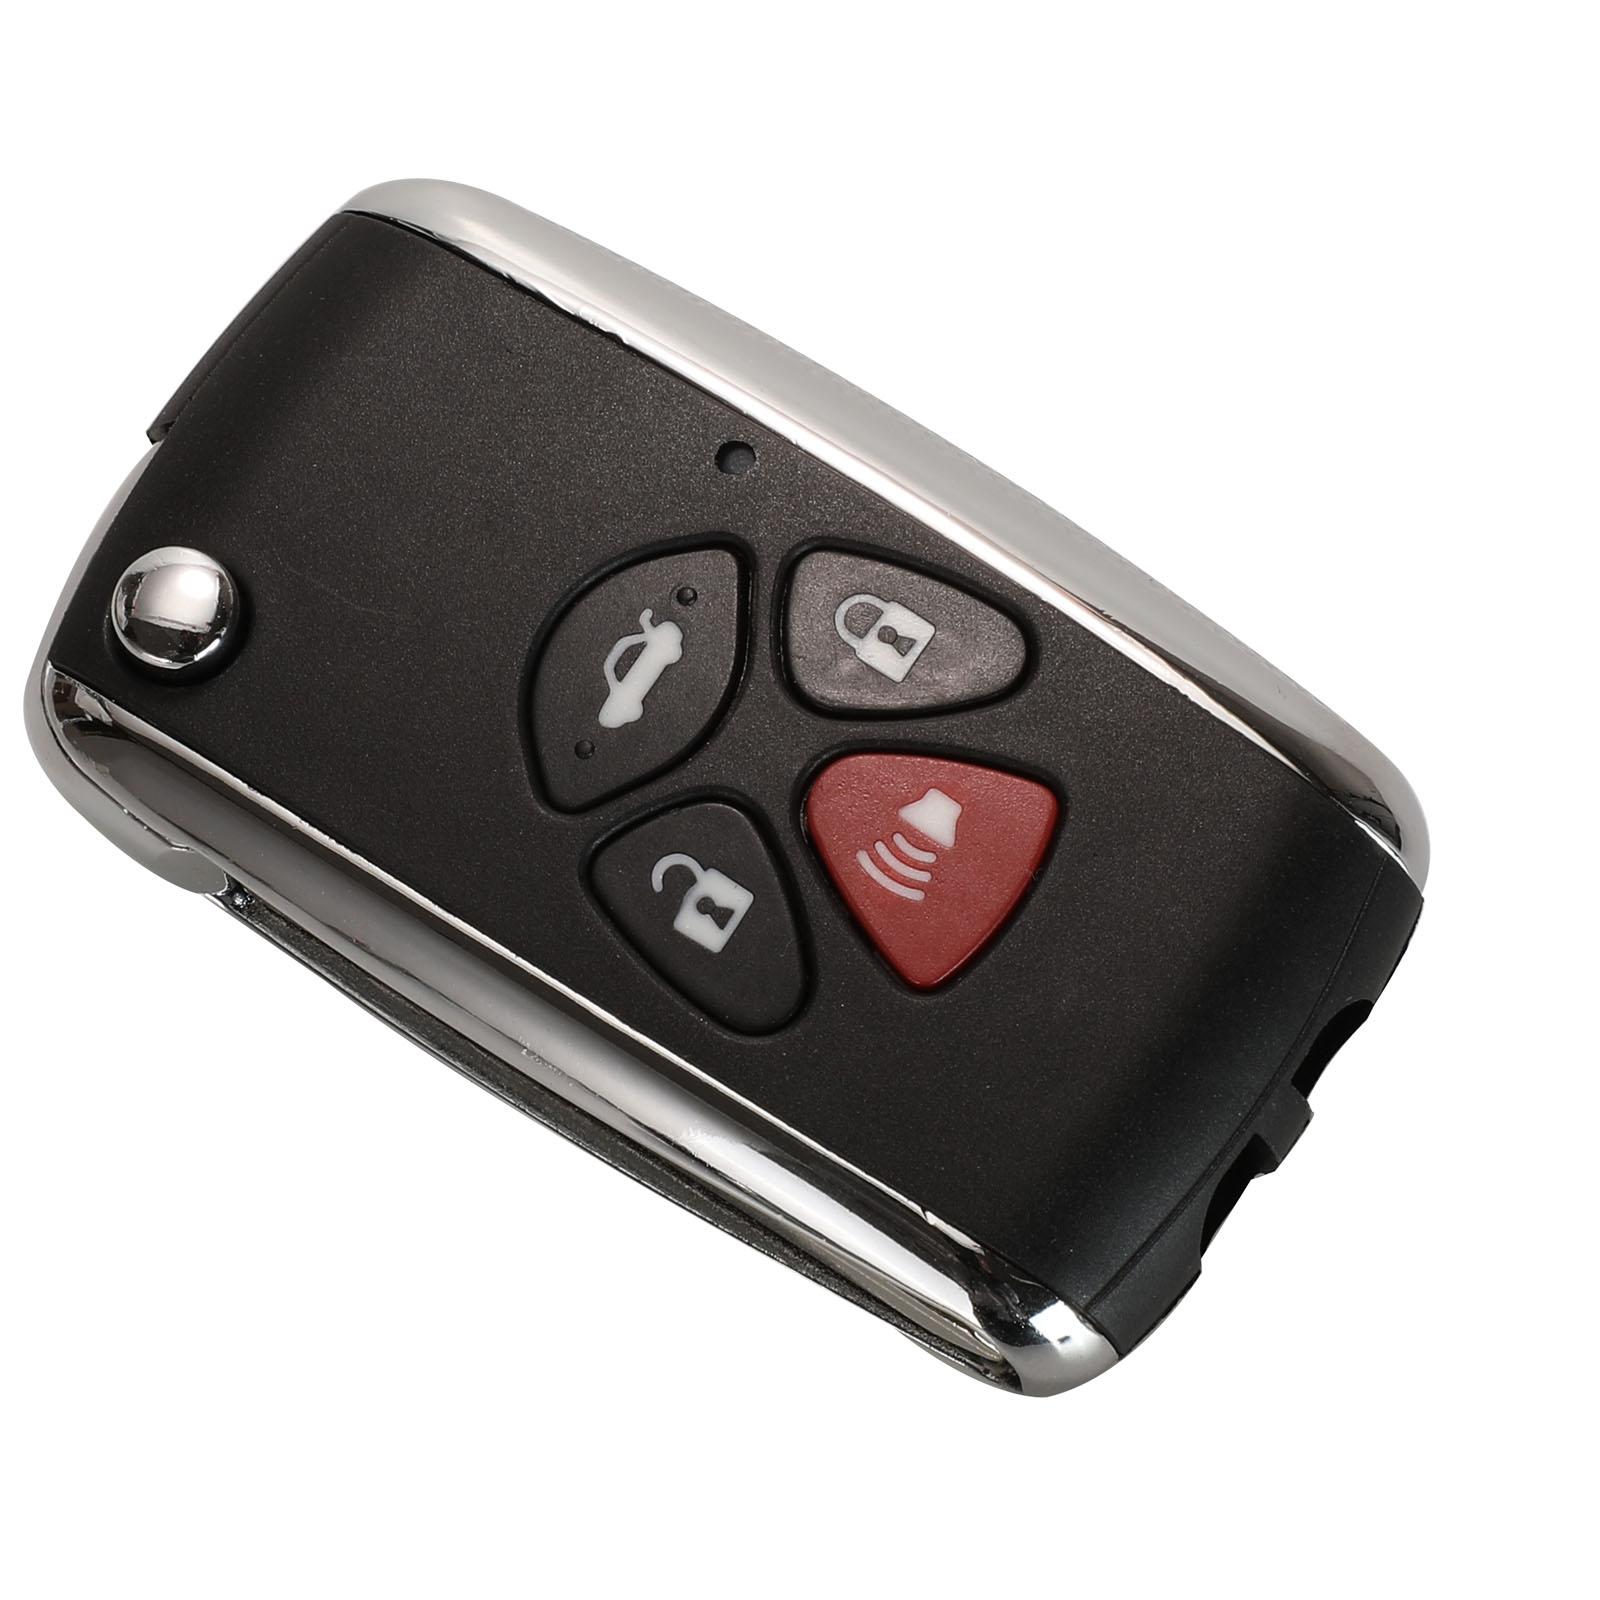 Изображение товара: Kutery 10 шт. 2/3/4 кнопки модифицированный дистанционный чехол для ключа автомобиля для Toyota Avlon Corolla Camry RAV4 Reiz Yaris Prado без лезвия